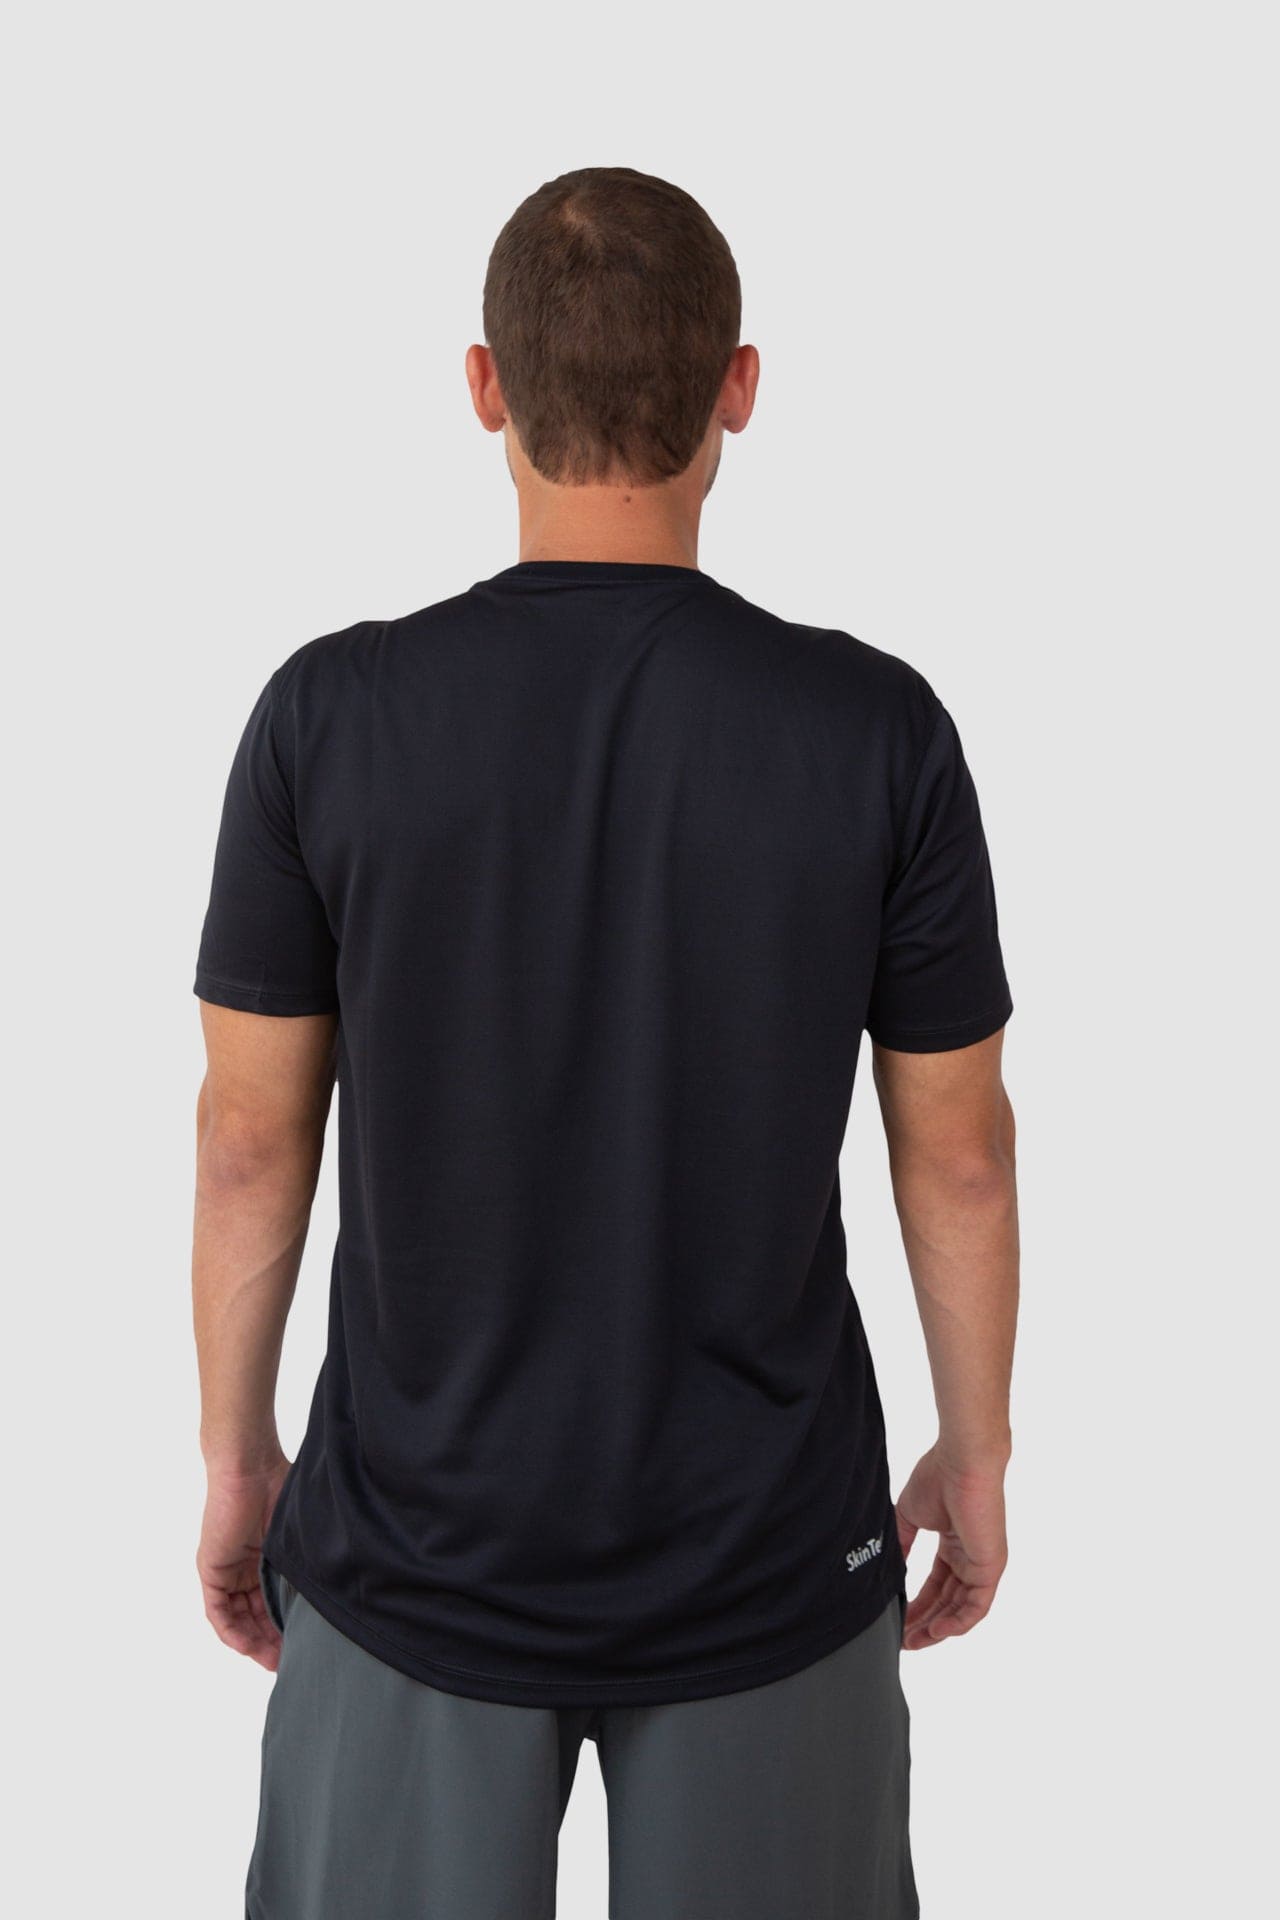 Camiseta de Pádel para vestir - Compra ropa de pádel en ROPAPADEL